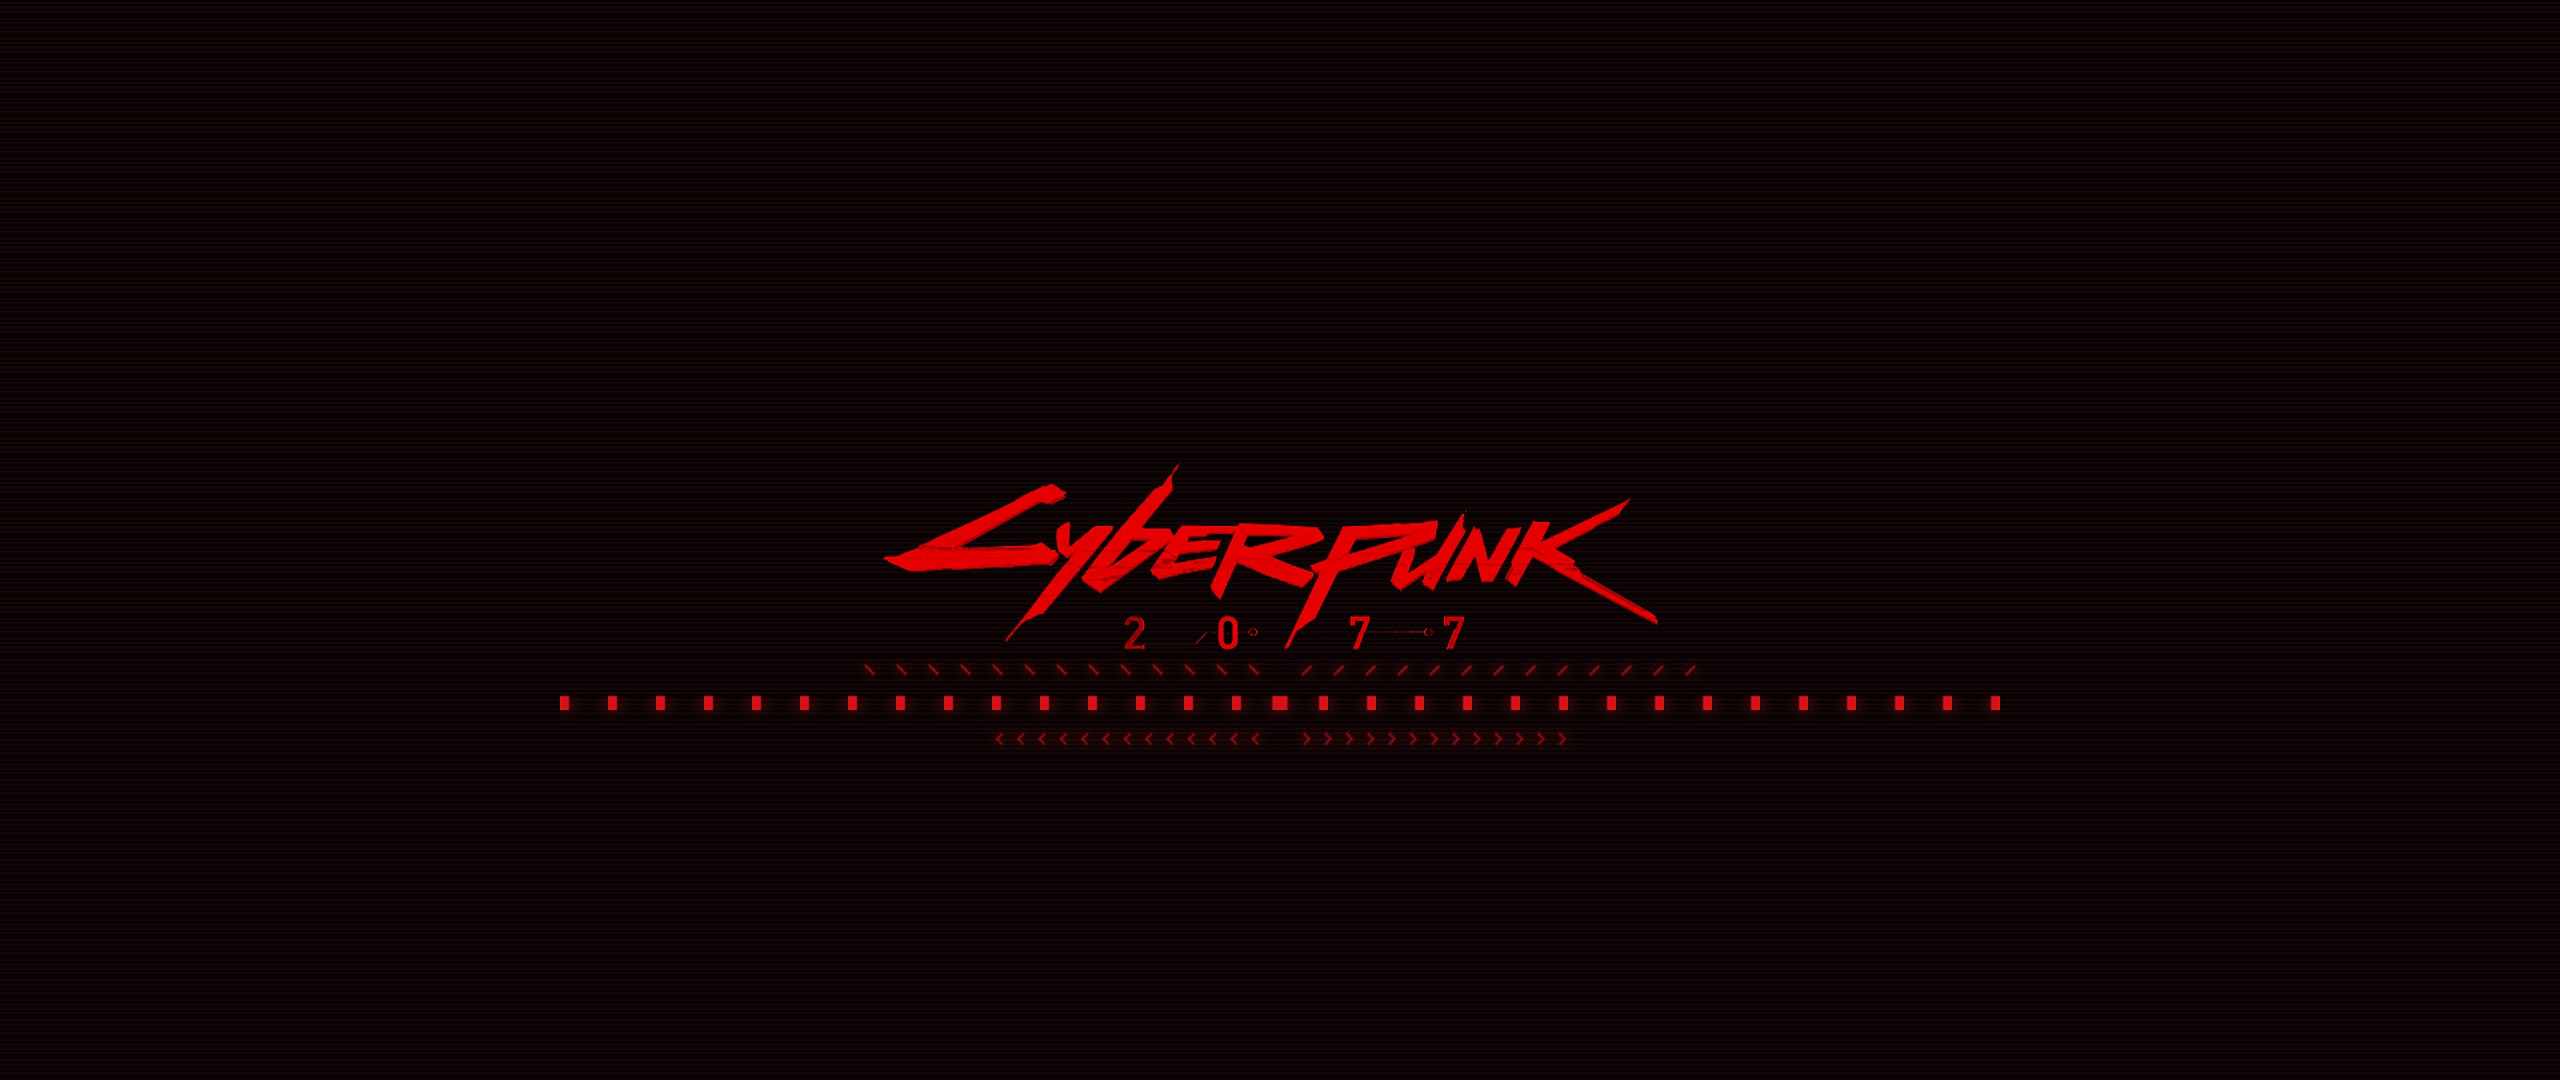 Cyberpunk logo animation фото 13